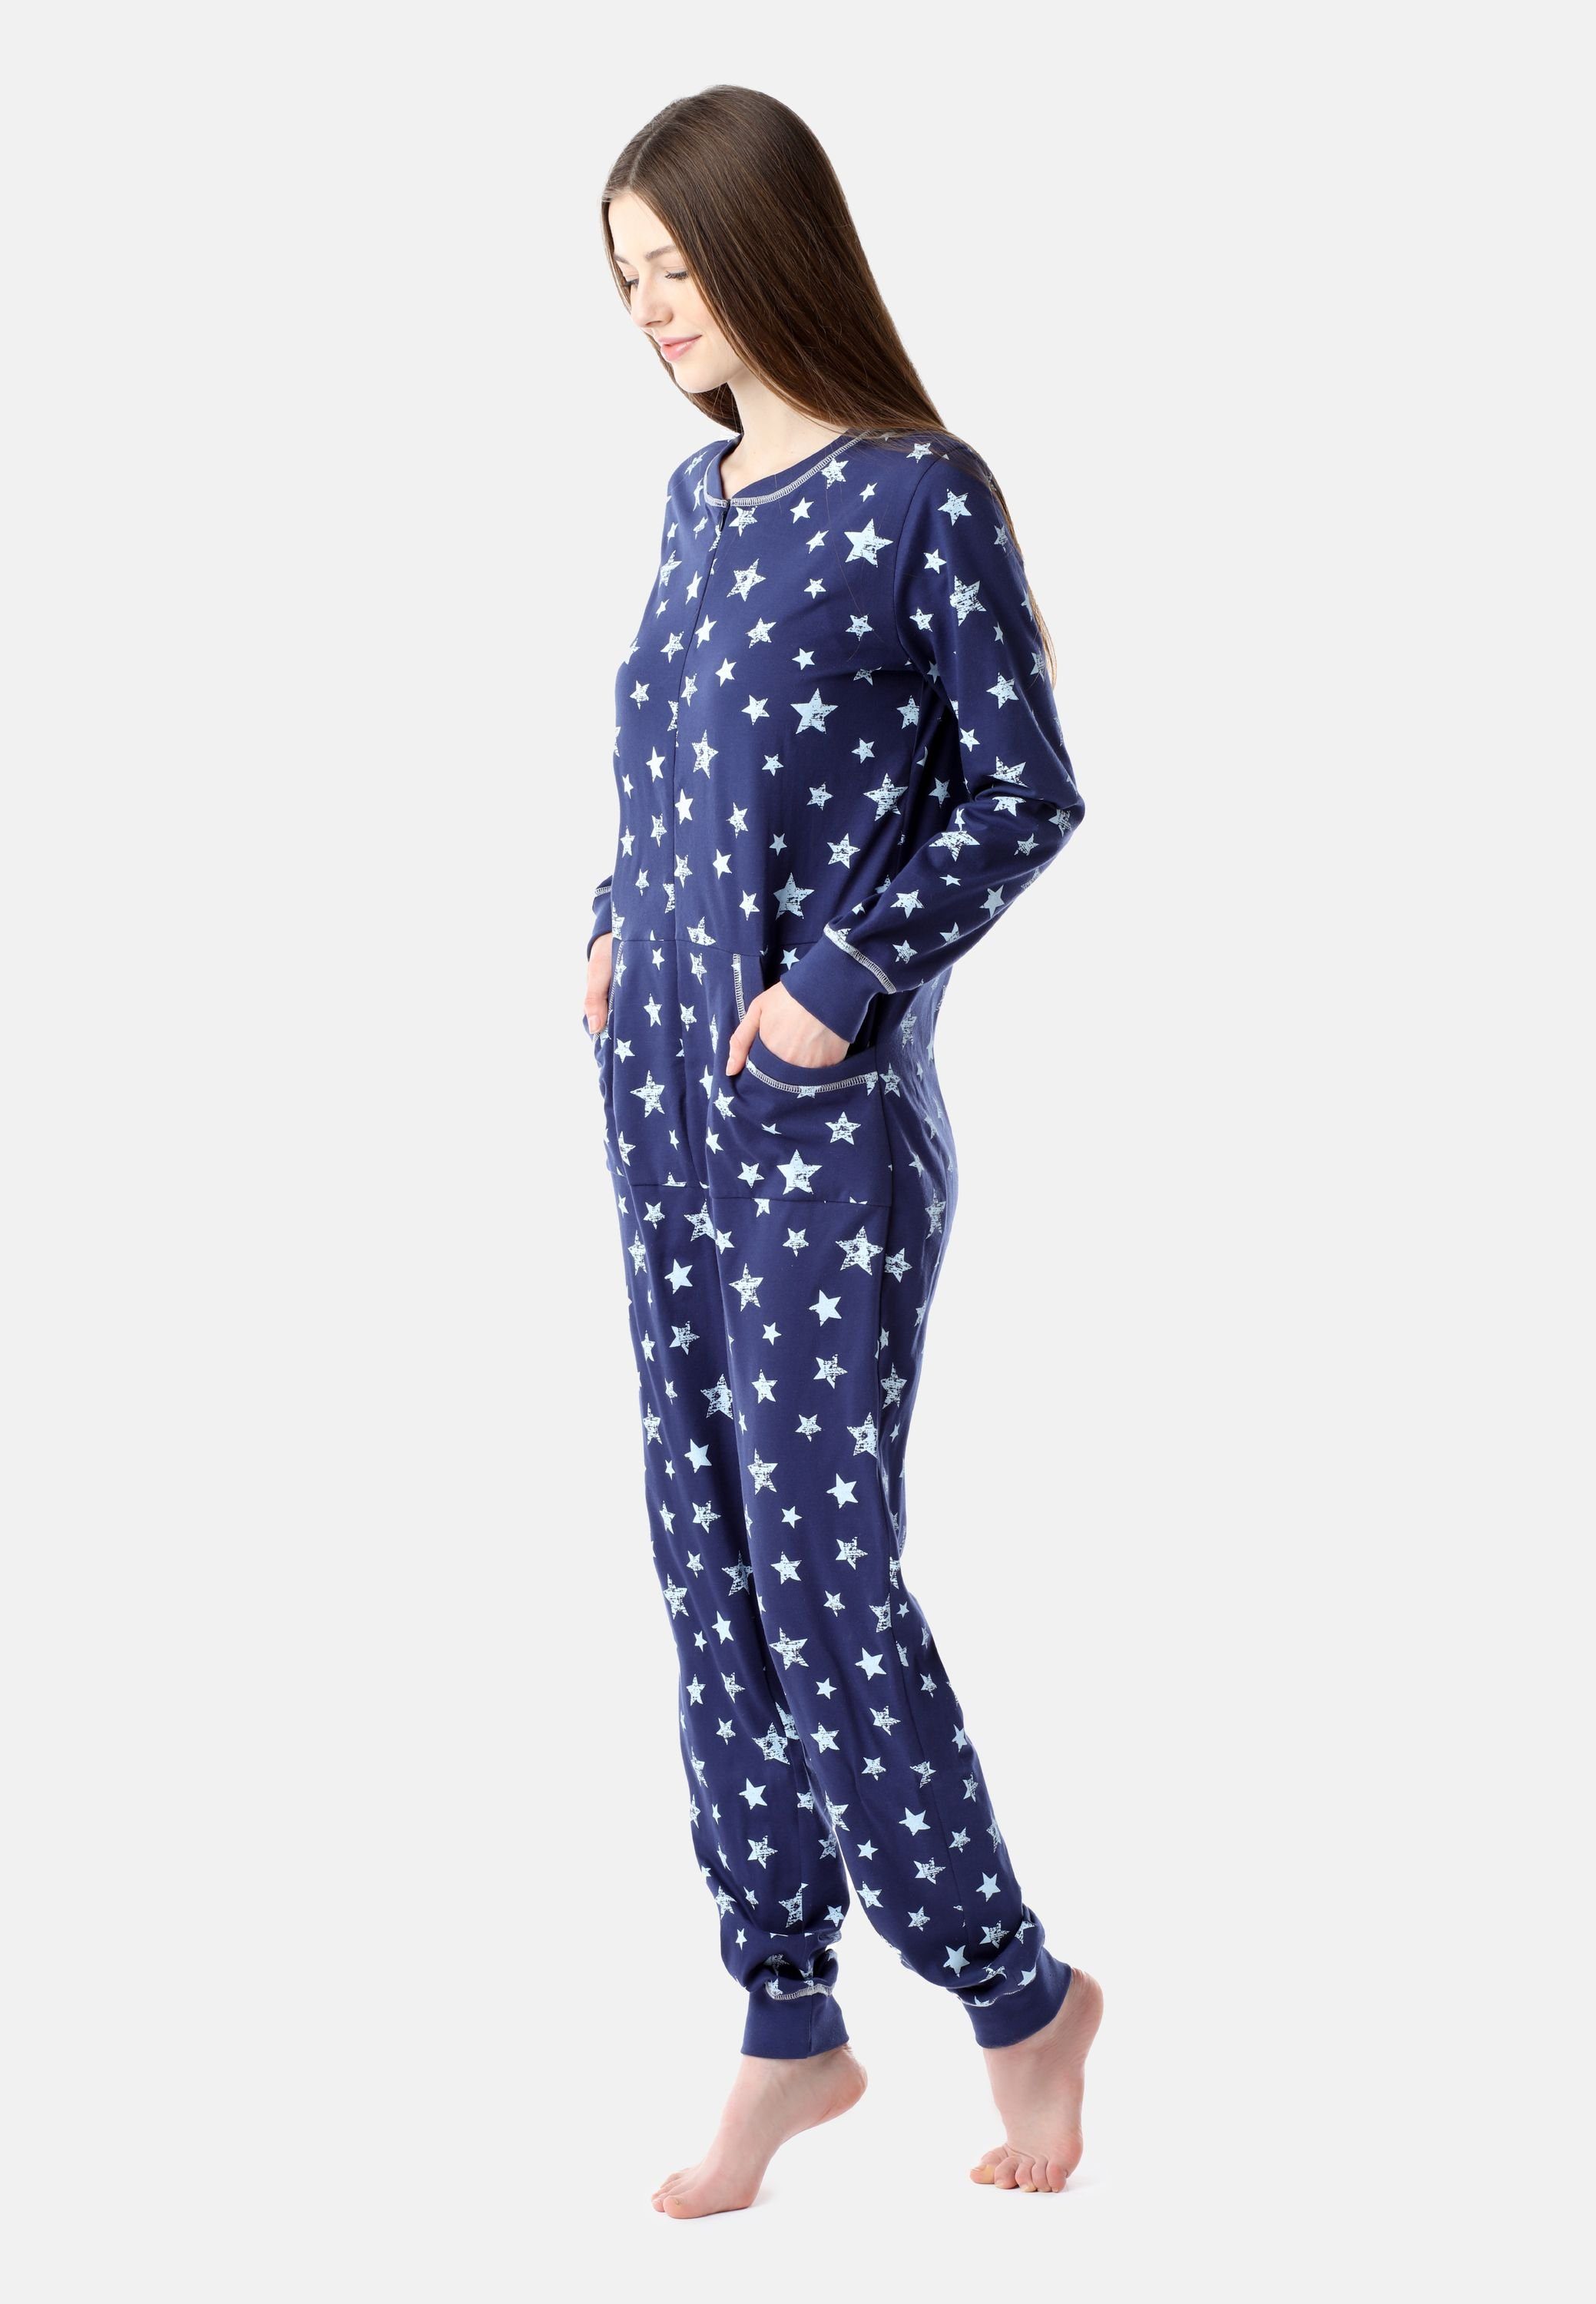 Schlafanzug BLV50-206 Schlafoverall Damen Marineblau/Blaue Sterne Pyjama Bellivalini